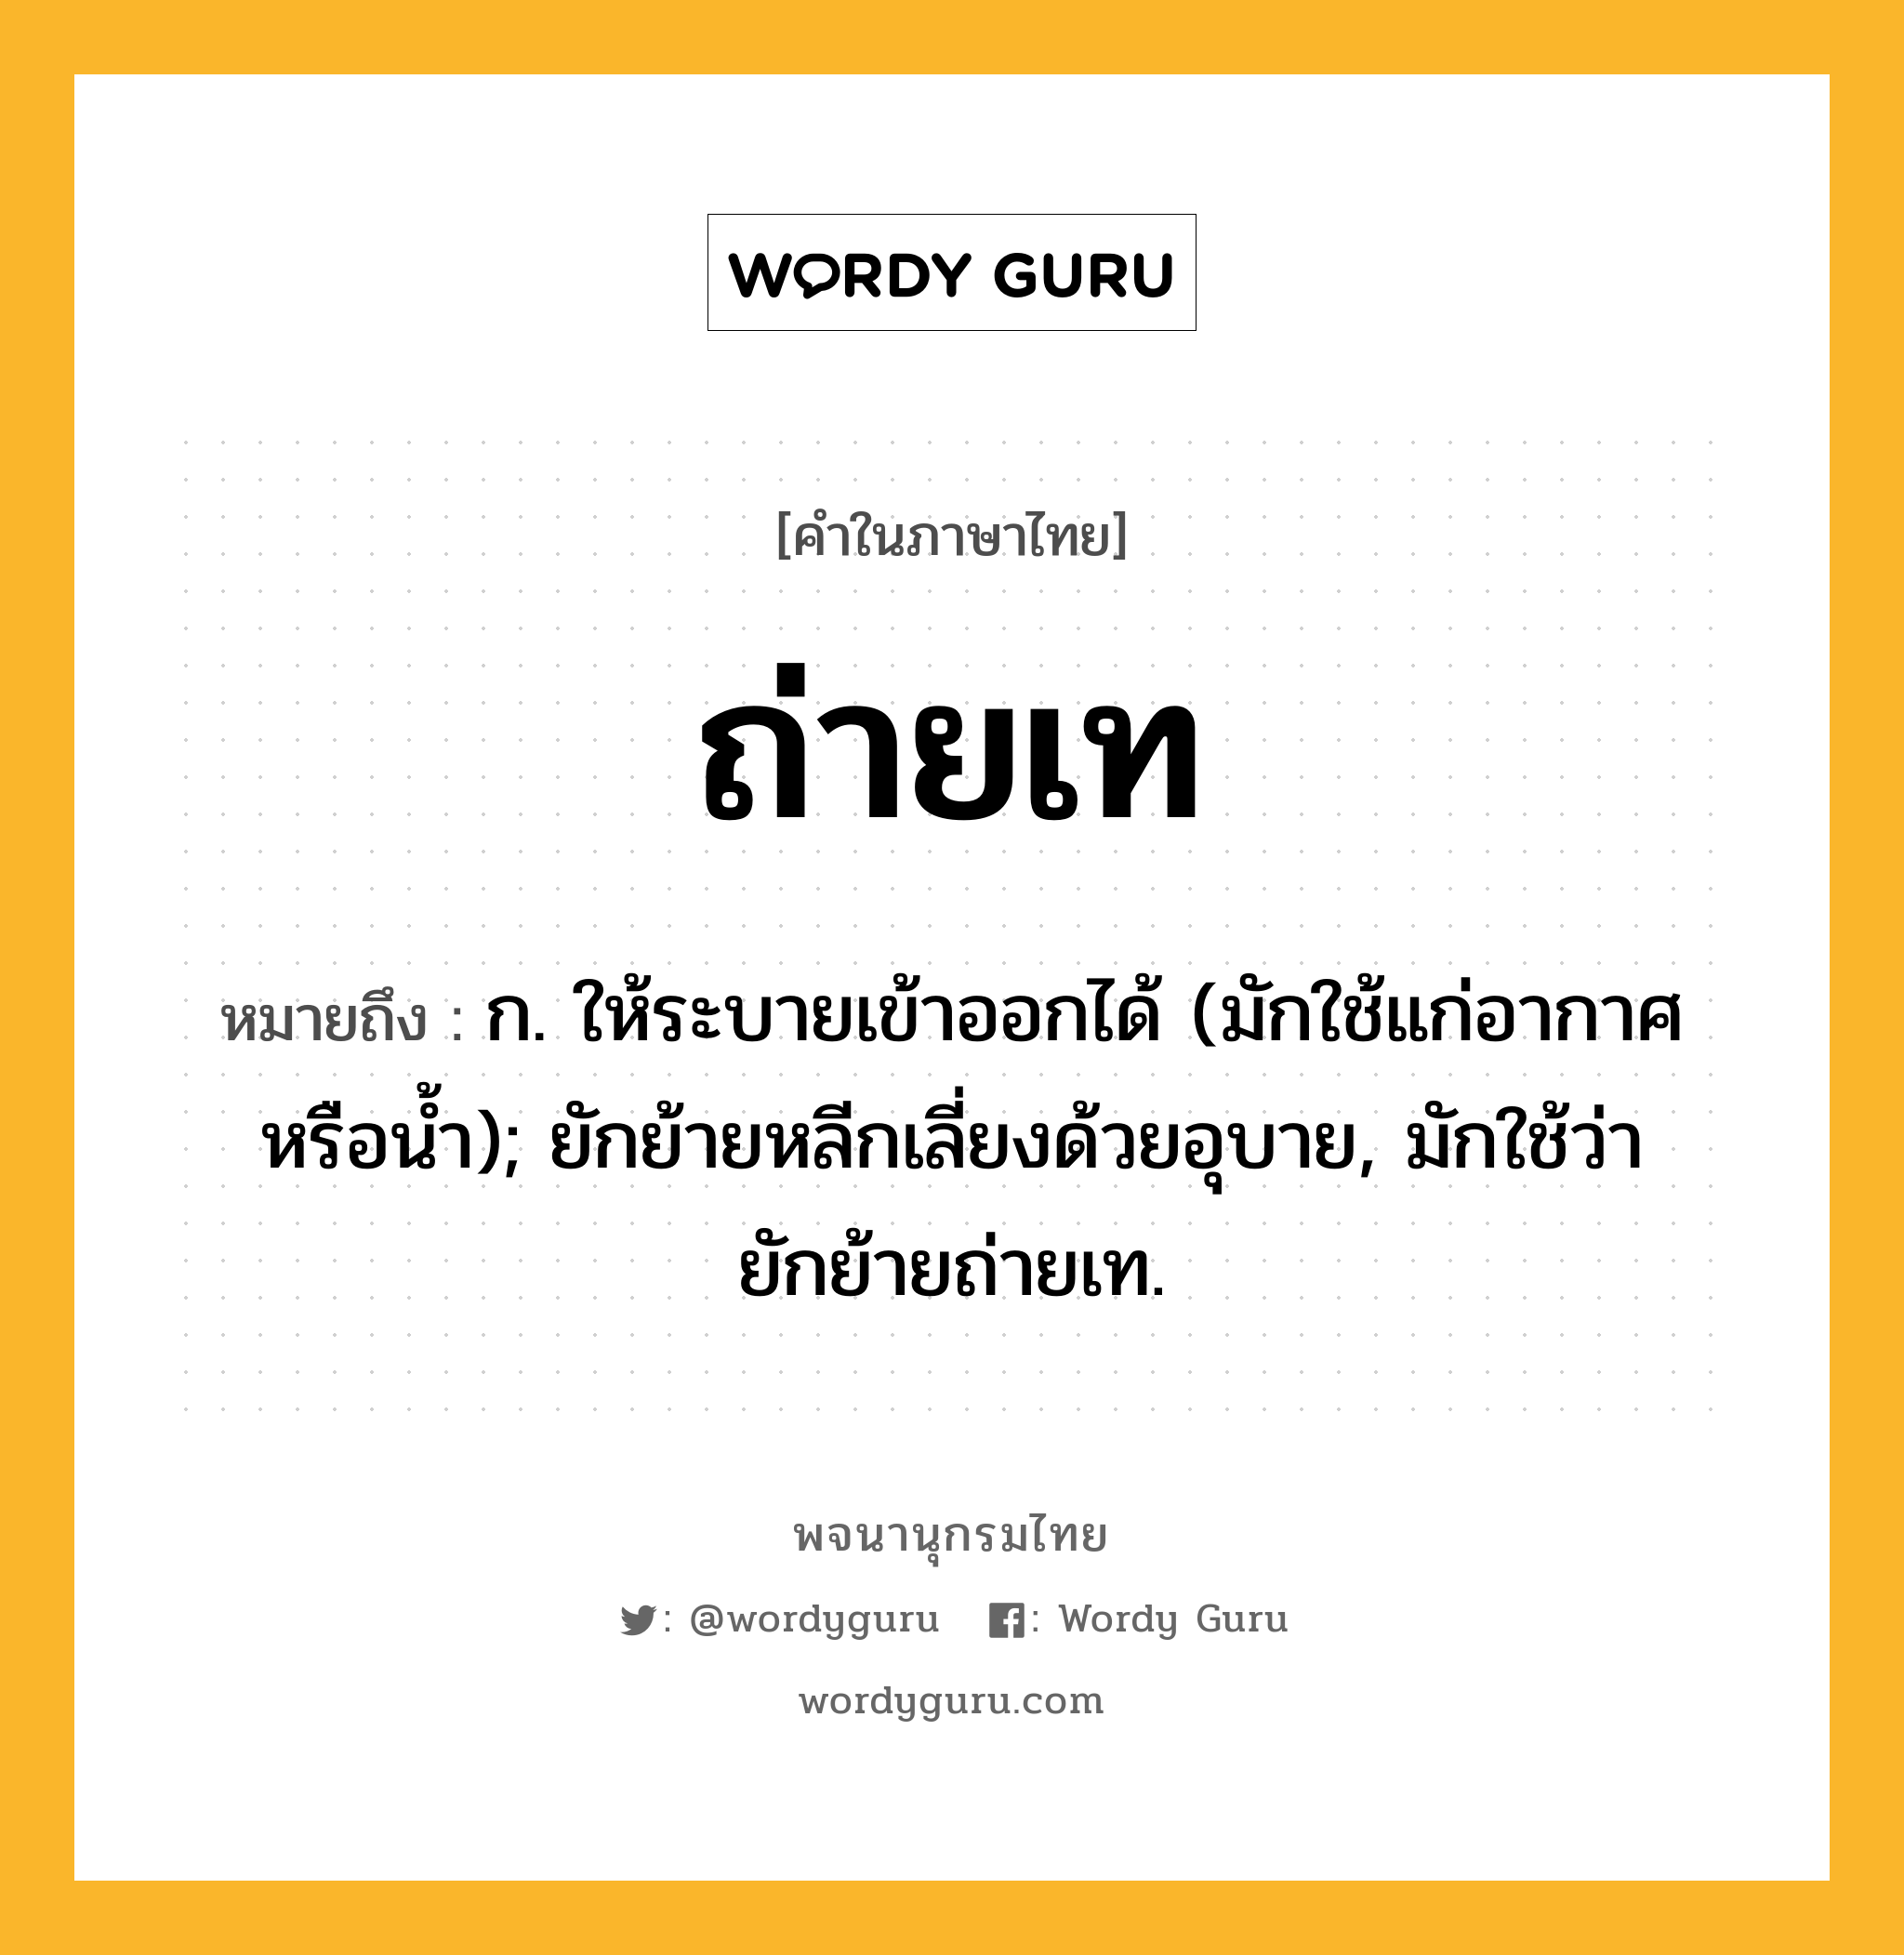 ถ่ายเท หมายถึงอะไร?, คำในภาษาไทย ถ่ายเท หมายถึง ก. ให้ระบายเข้าออกได้ (มักใช้แก่อากาศหรือนํ้า); ยักย้ายหลีกเลี่ยงด้วยอุบาย, มักใช้ว่า ยักย้ายถ่ายเท.